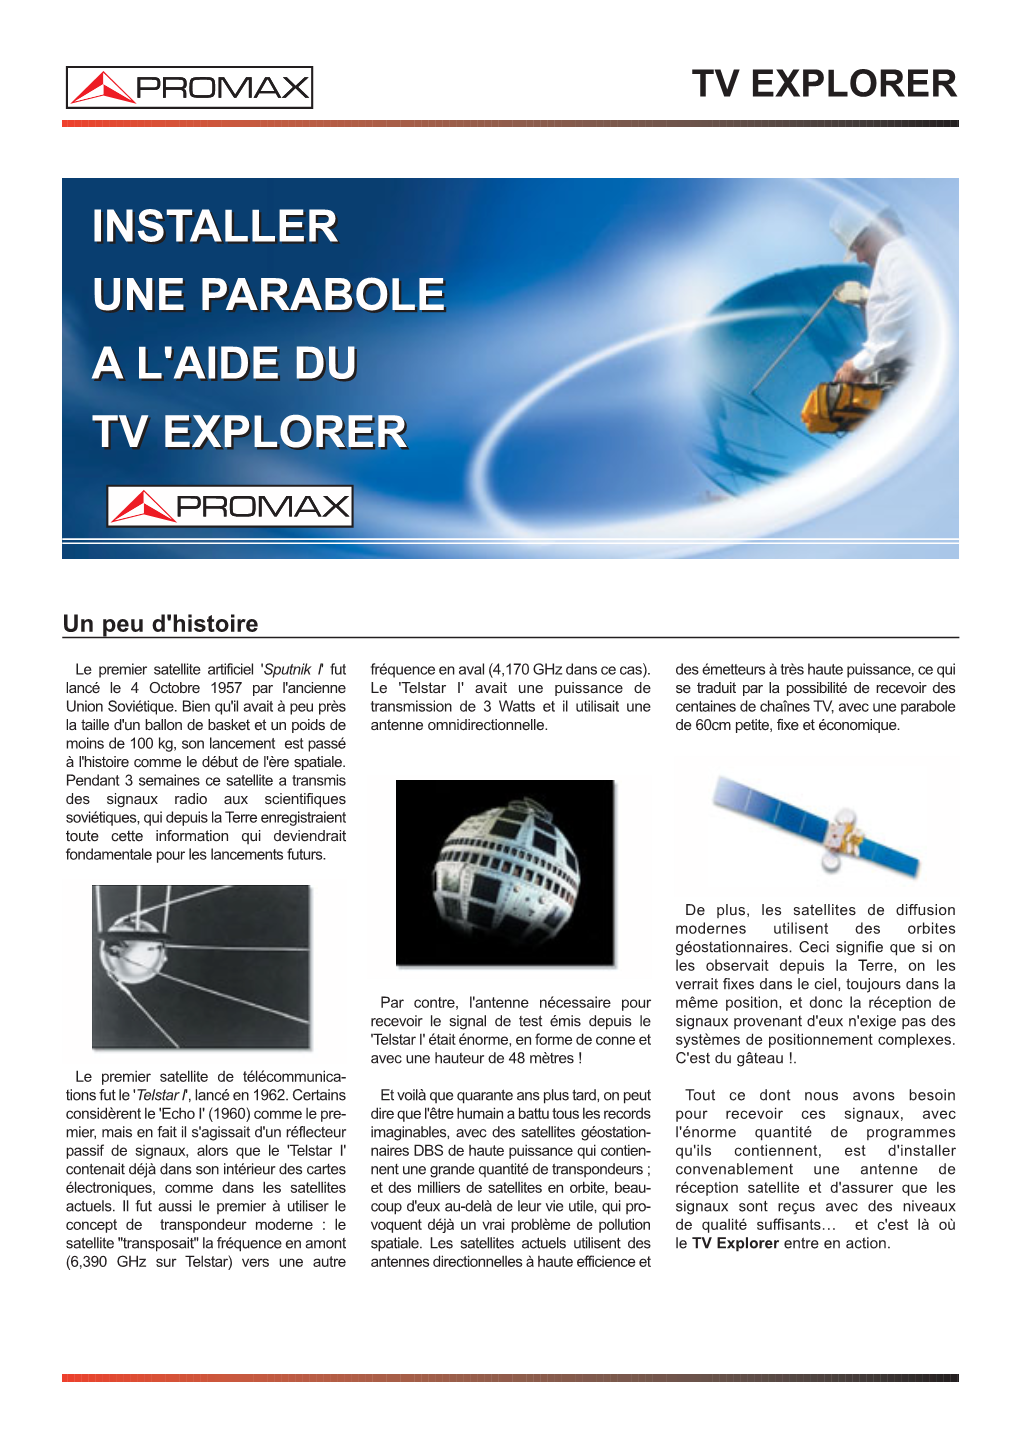 Installer Une Parabole a L'aide Du TV Explorer